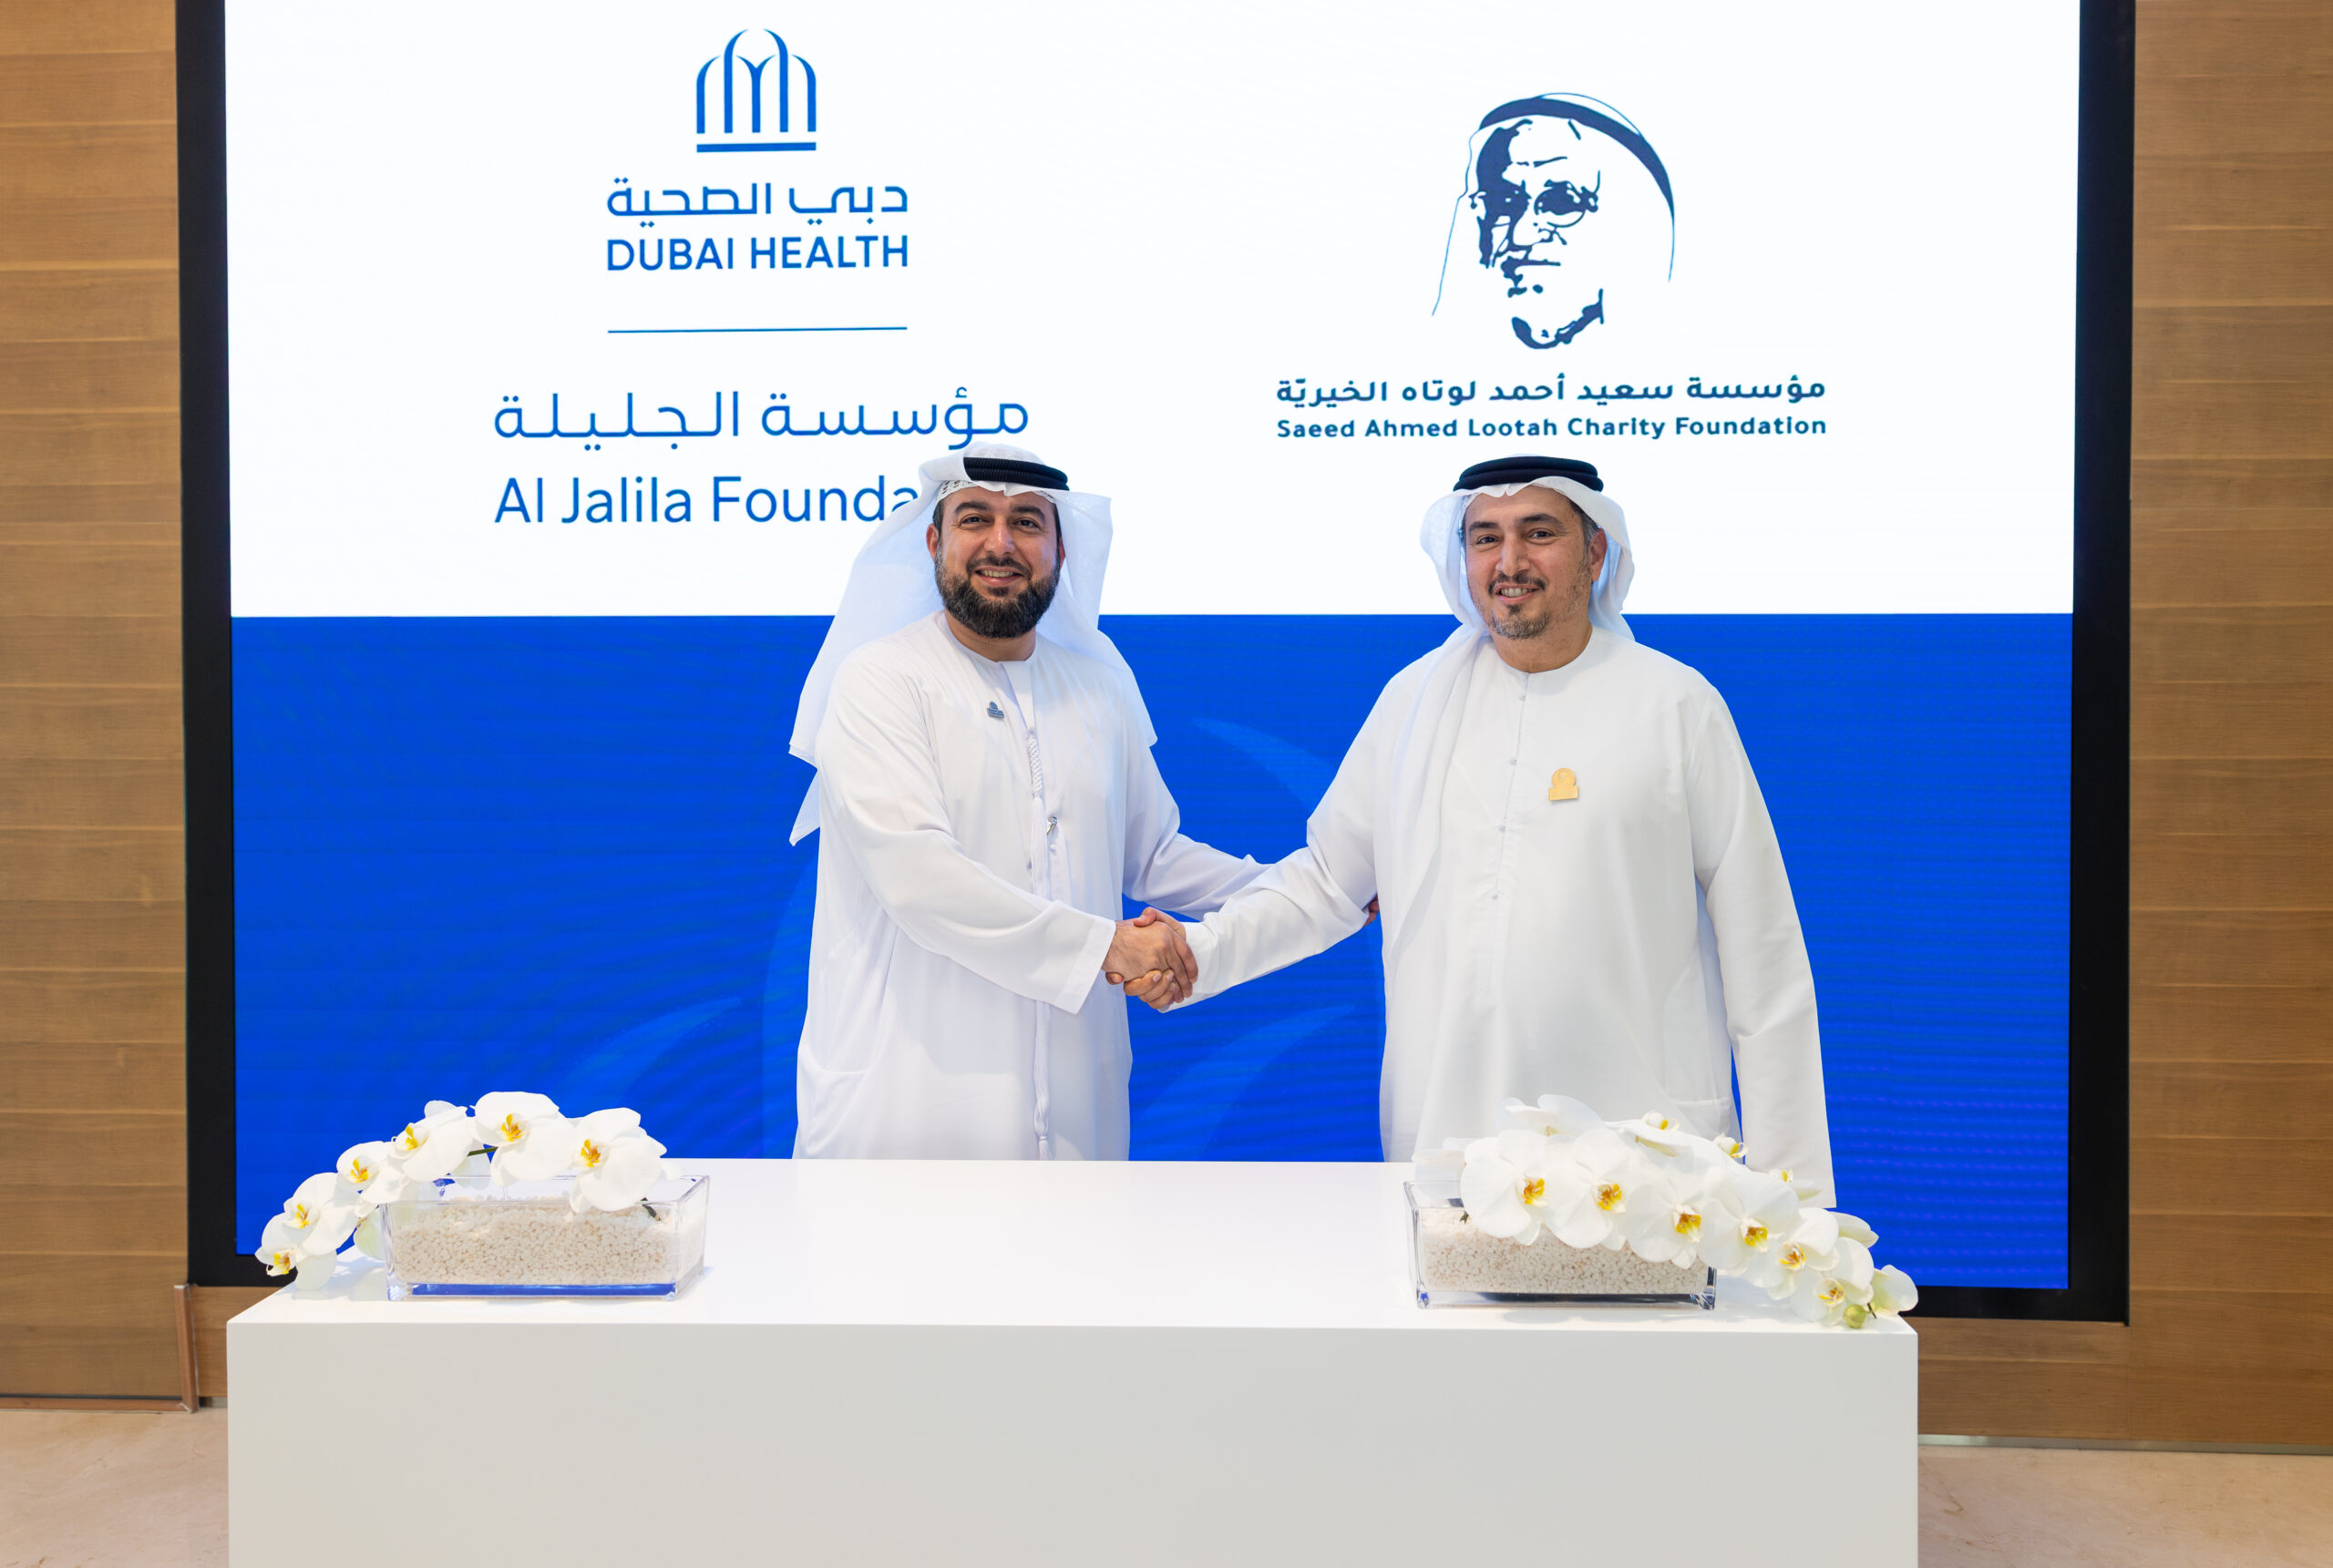 مؤسسة سعيد أحمد لوتاه الخيرية تتبرع بـمبلغ 15 مليون درهم لدعم مستشفى حمدان بن راشد للسرطان